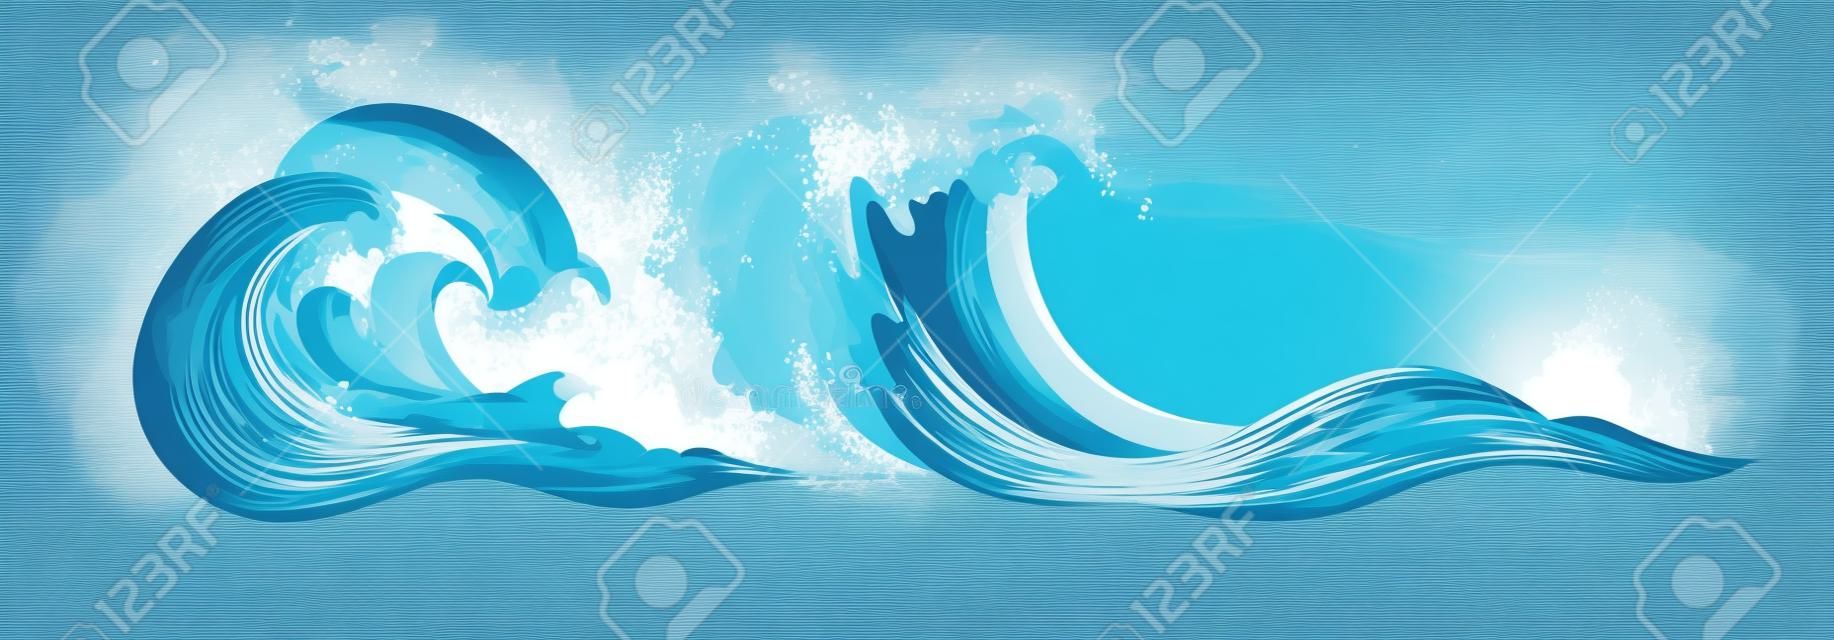 Éléments d'eau flottants. Ensemble de vagues de tsunami océanique. Illustrations vectorielles de dessin animé isolées sur fond blanc